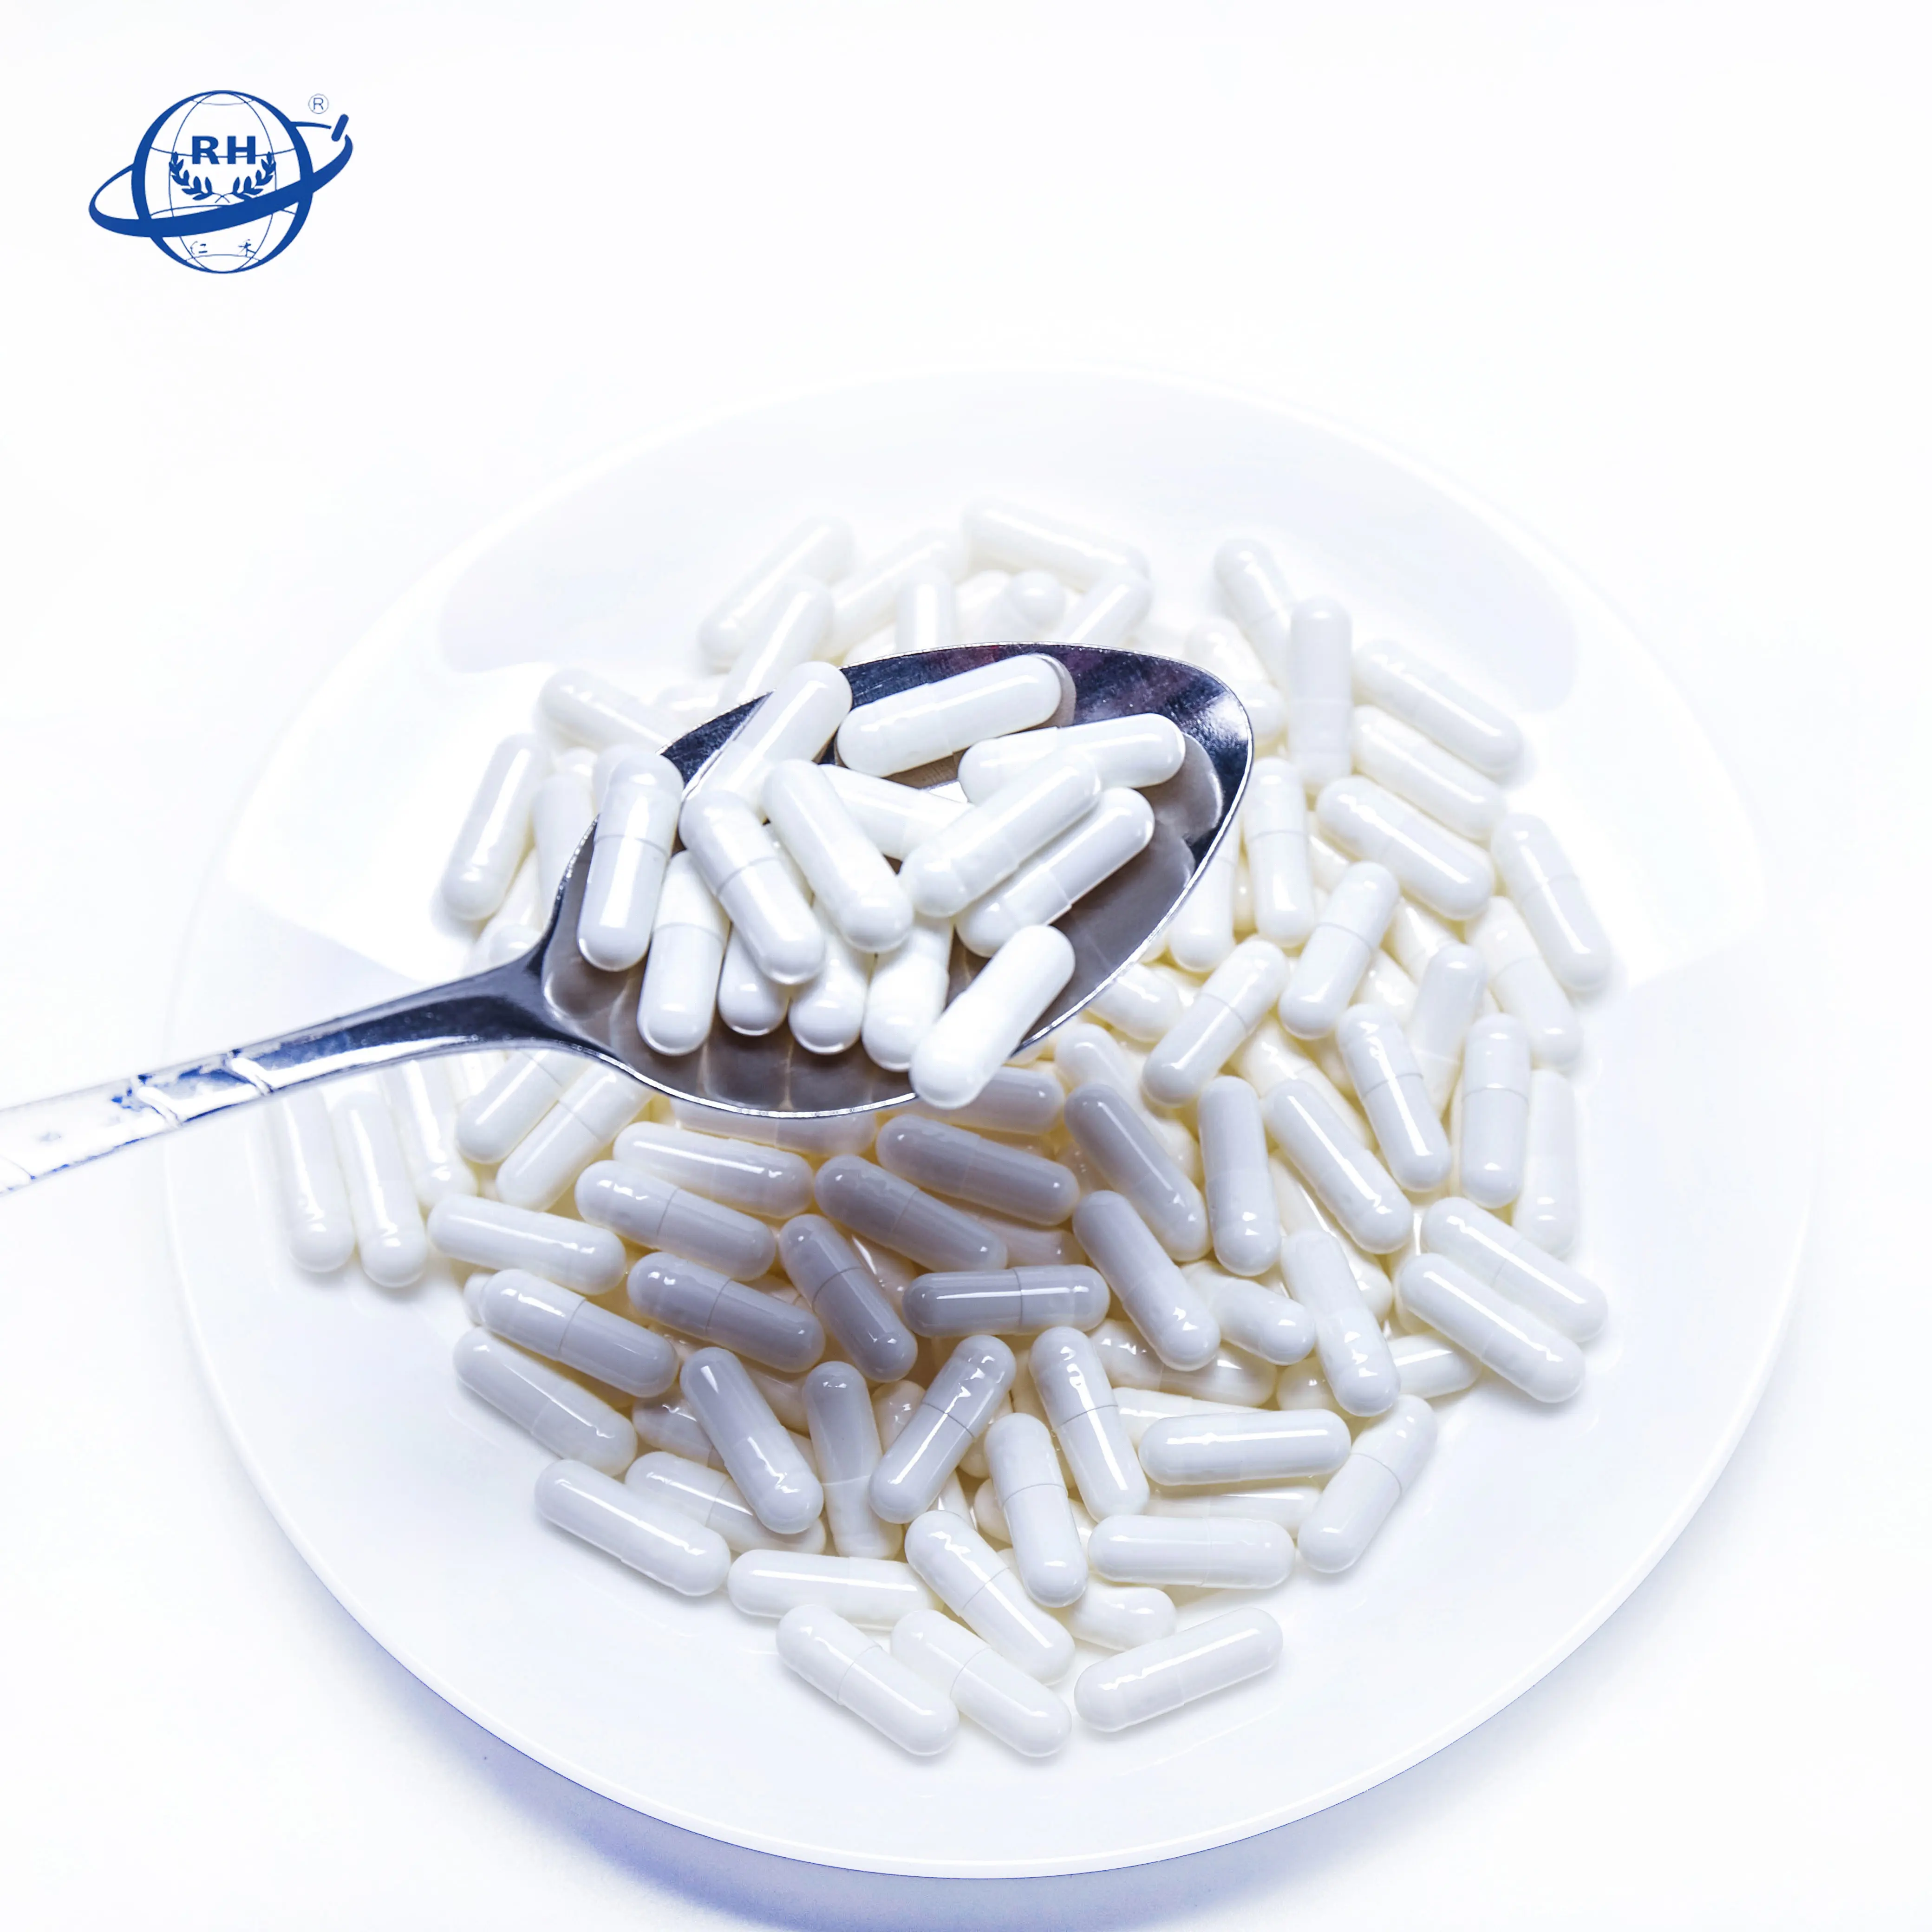 แคปซูล HPMC เปล่าสีขาวจำนวนมากขายส่งสำหรับยา